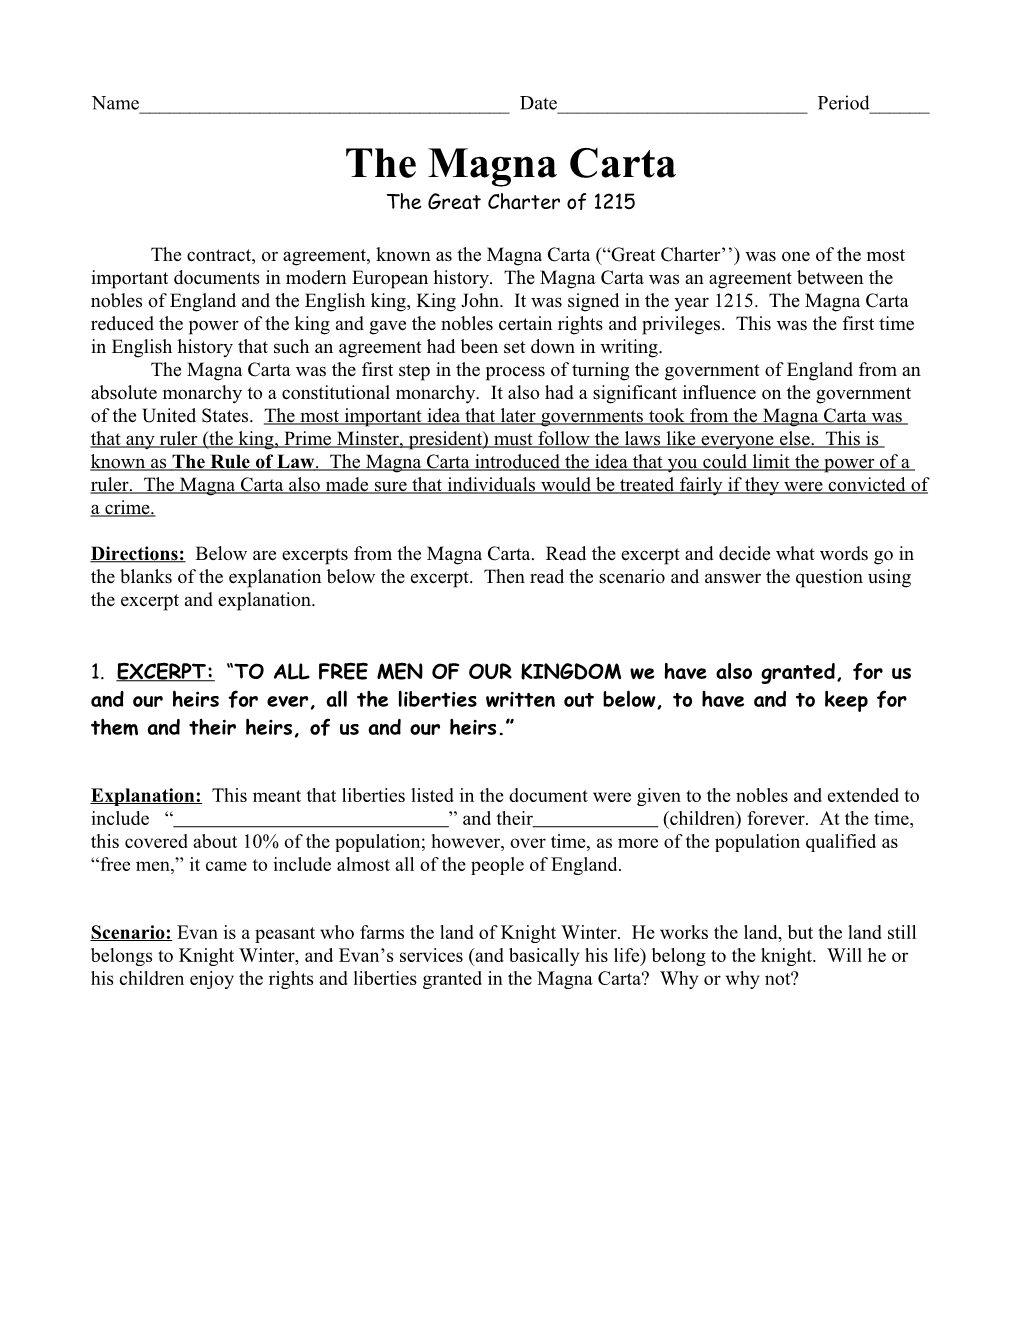 The Magna Carta s1